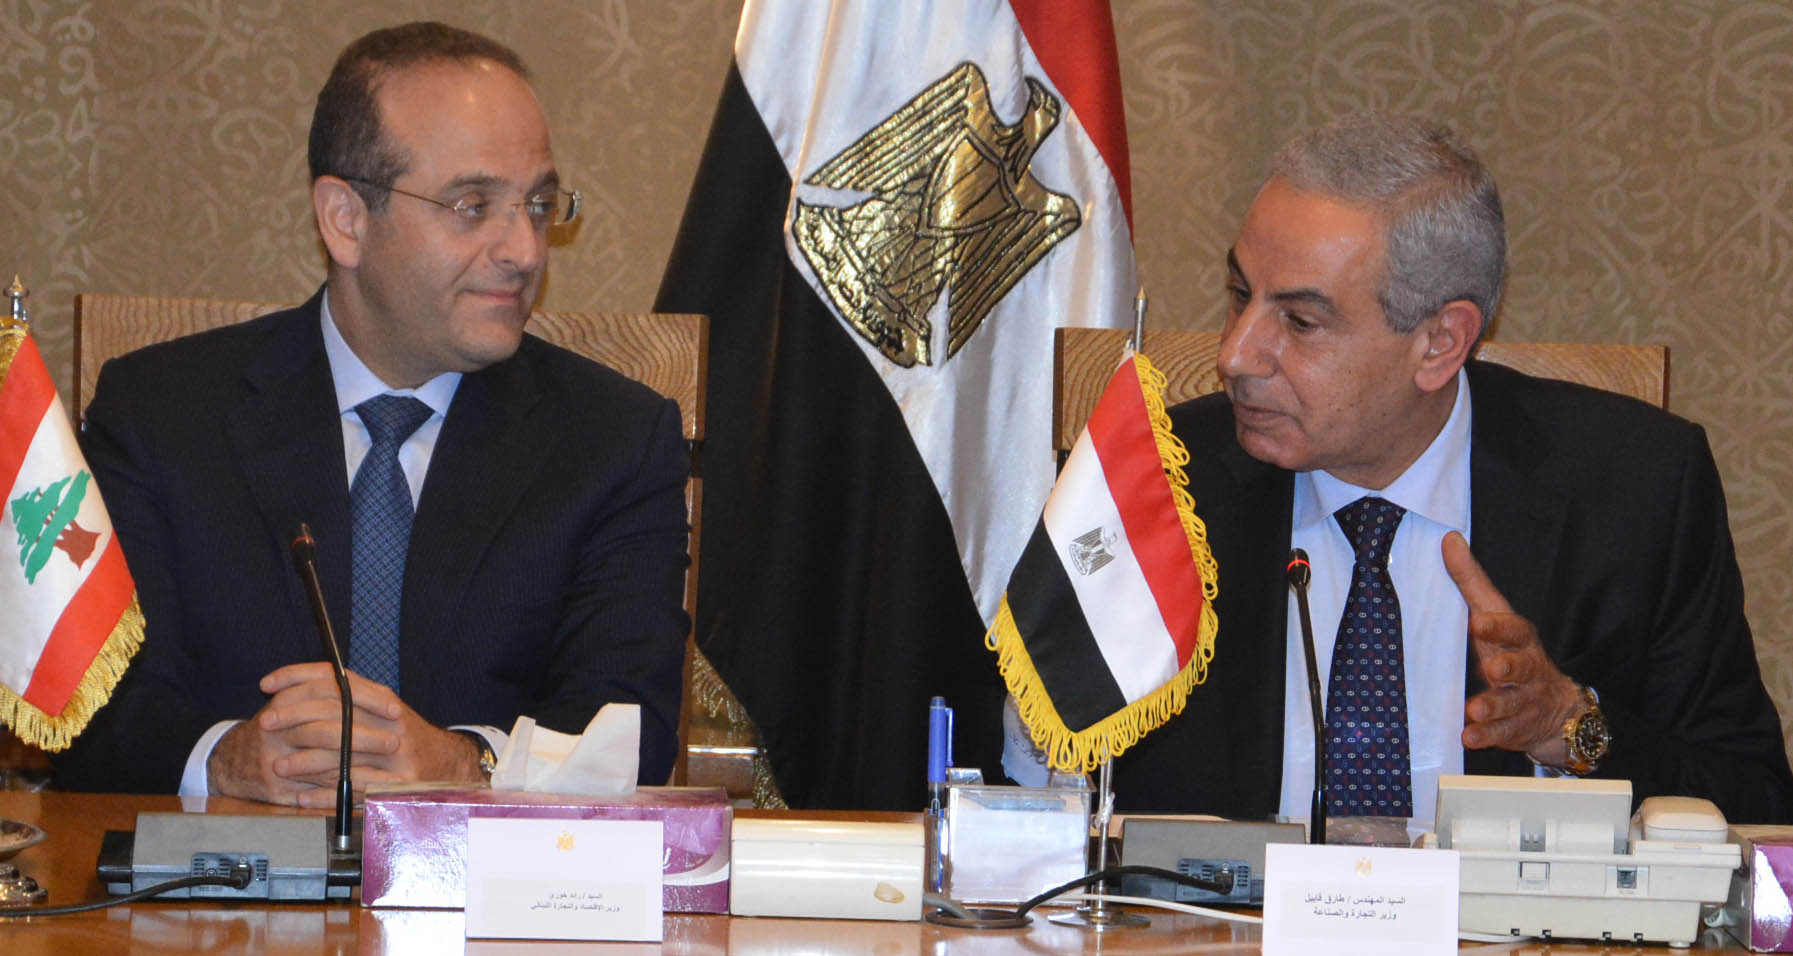   وزير الاقتصاد اللبناني: مصر استطاعت تجاوز أزمتها بفضل وعي شعبها تحت قيادة السيسي